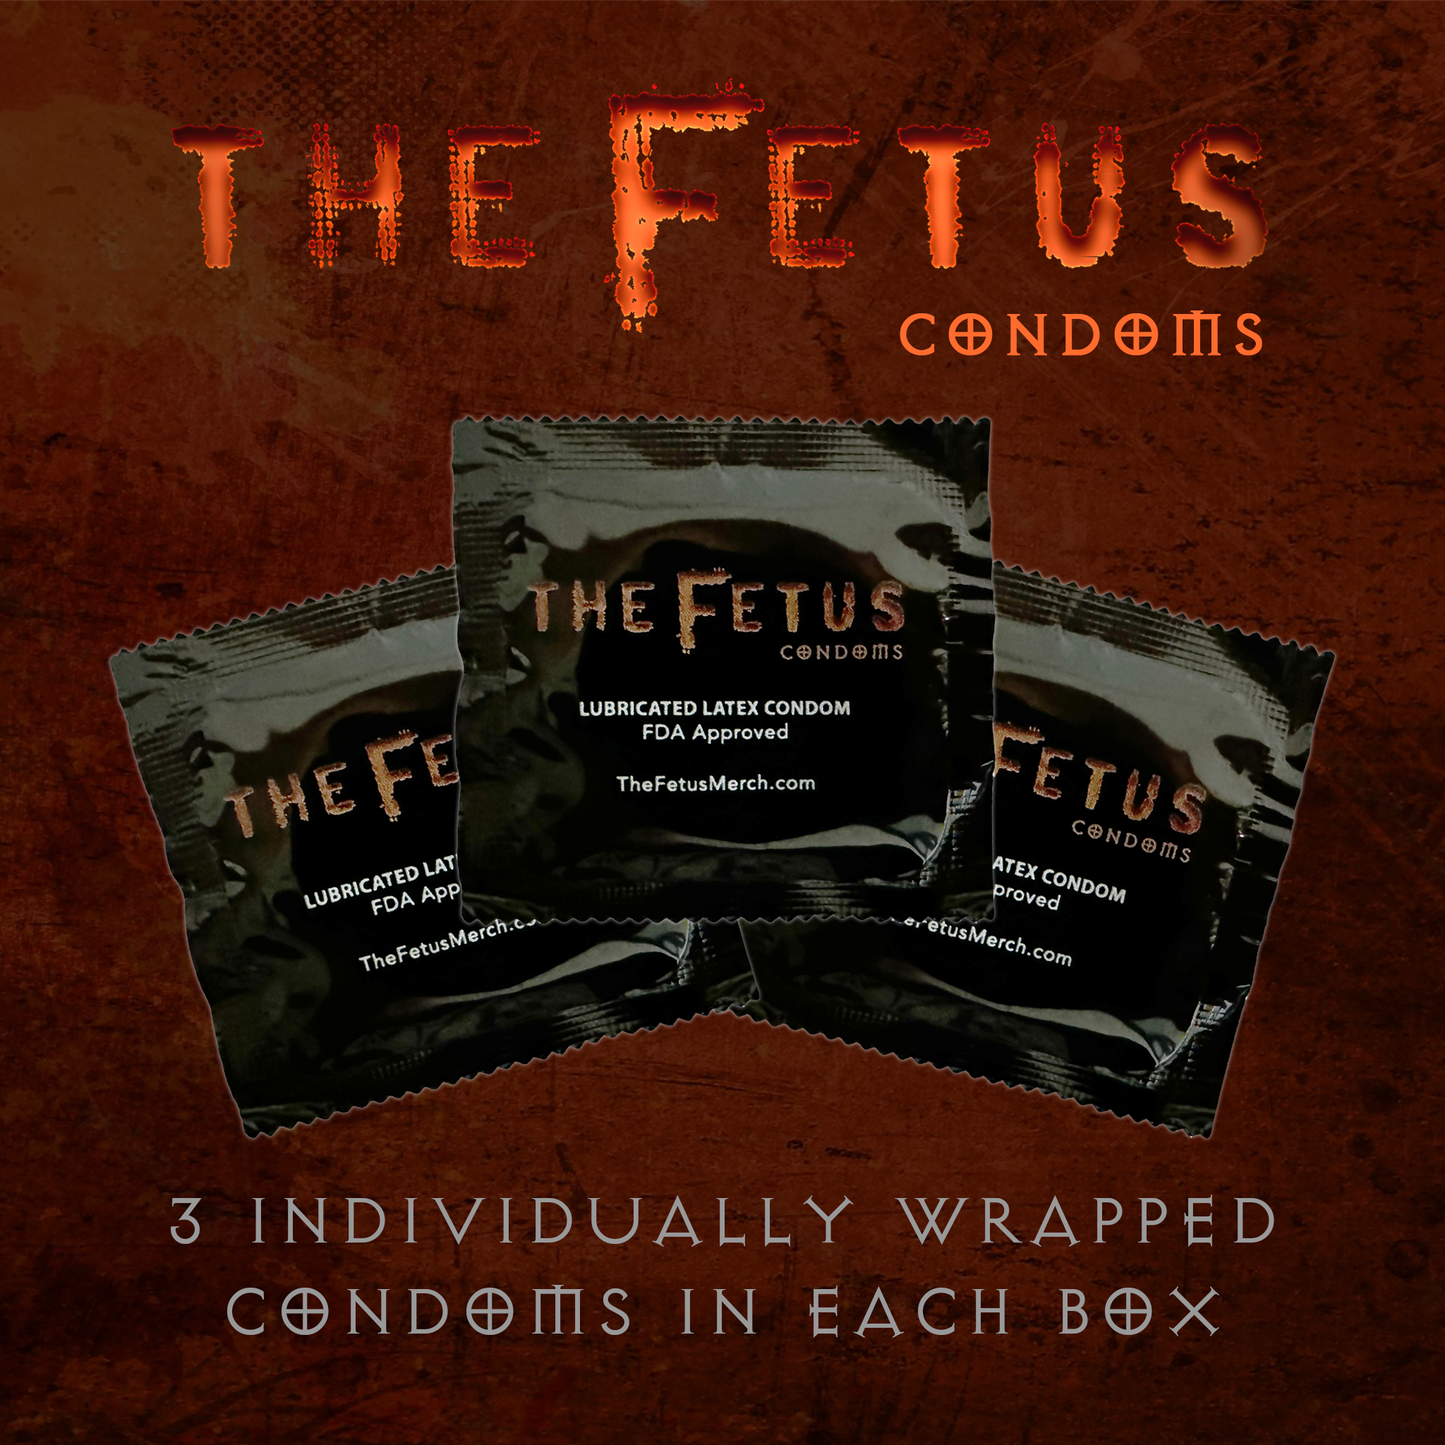 The Fetus Condoms